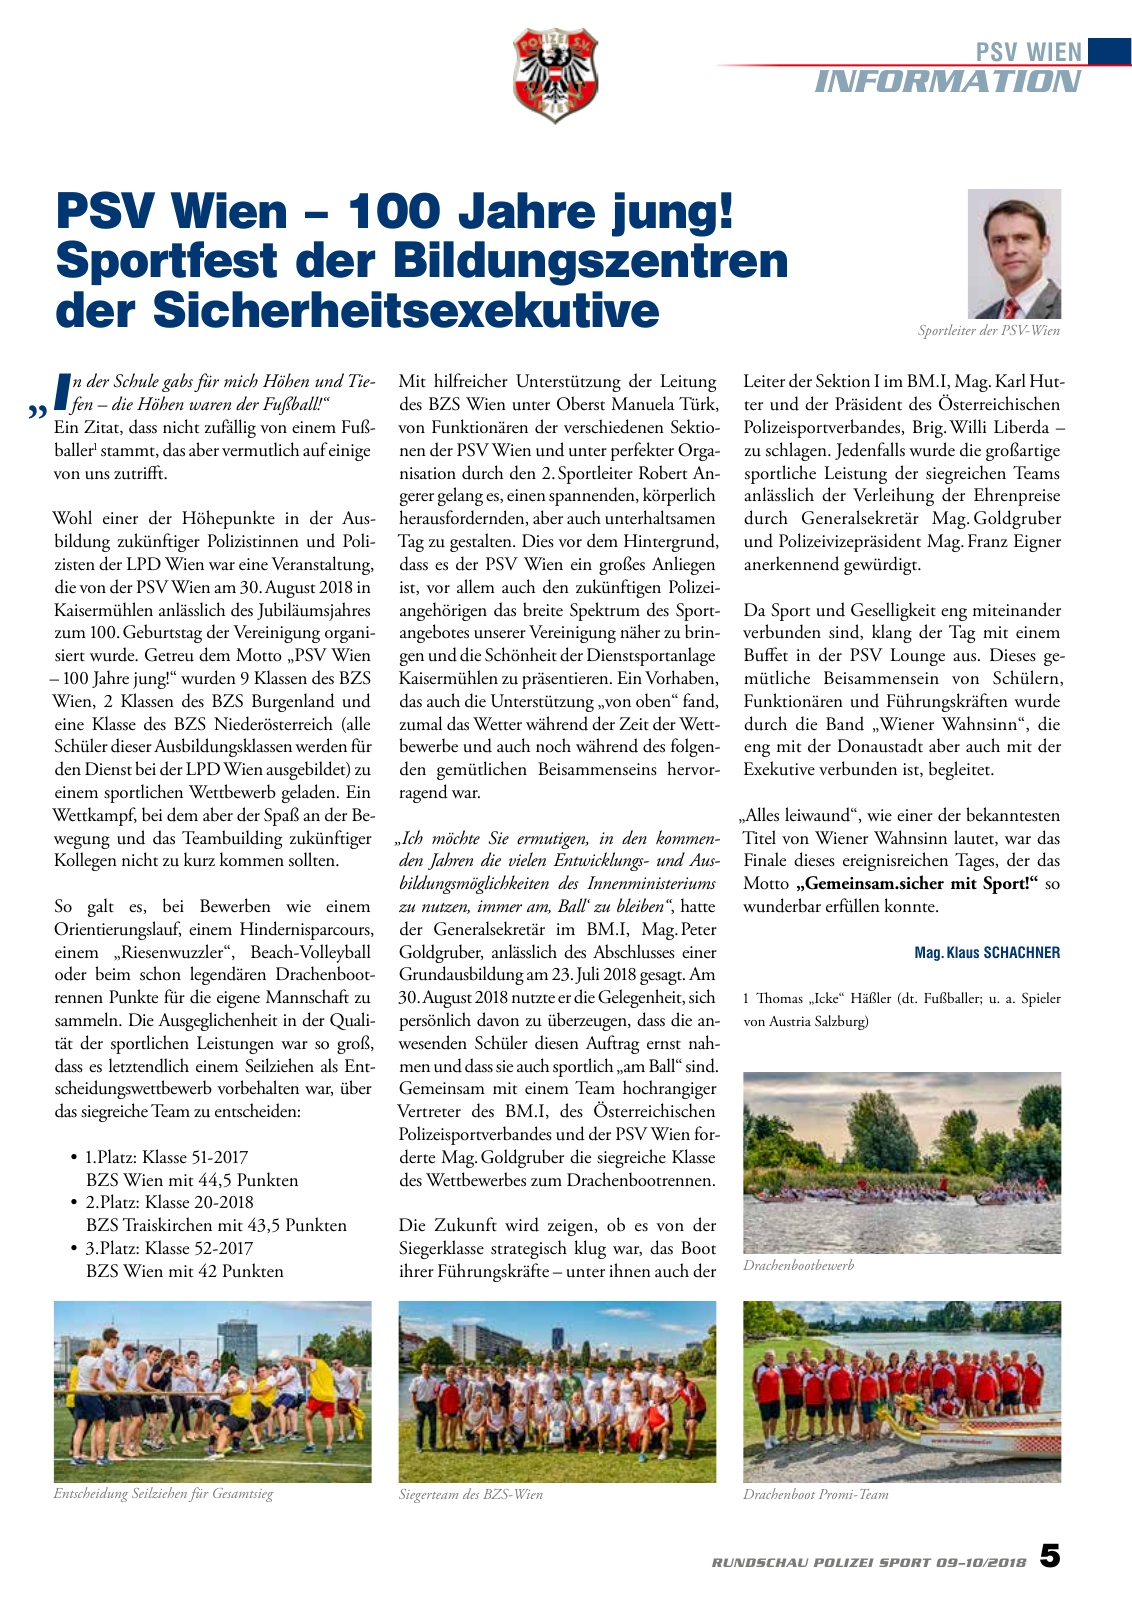 Vorschau Rundschau Polizei Sport 09-10/2018 Seite 5